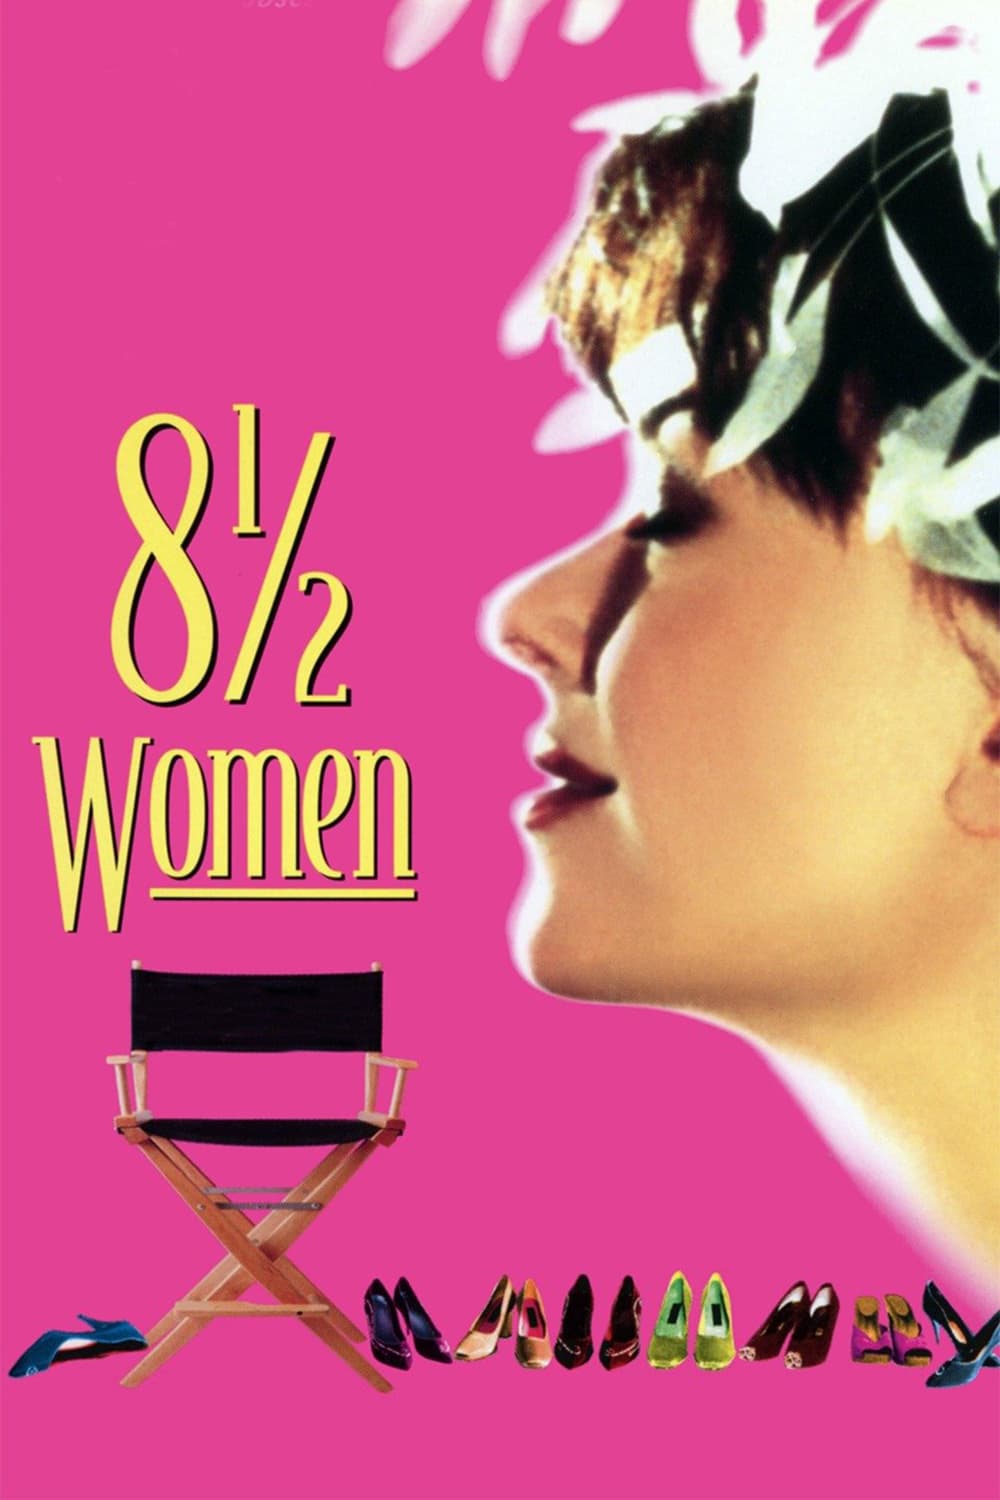 постер 8½ Women